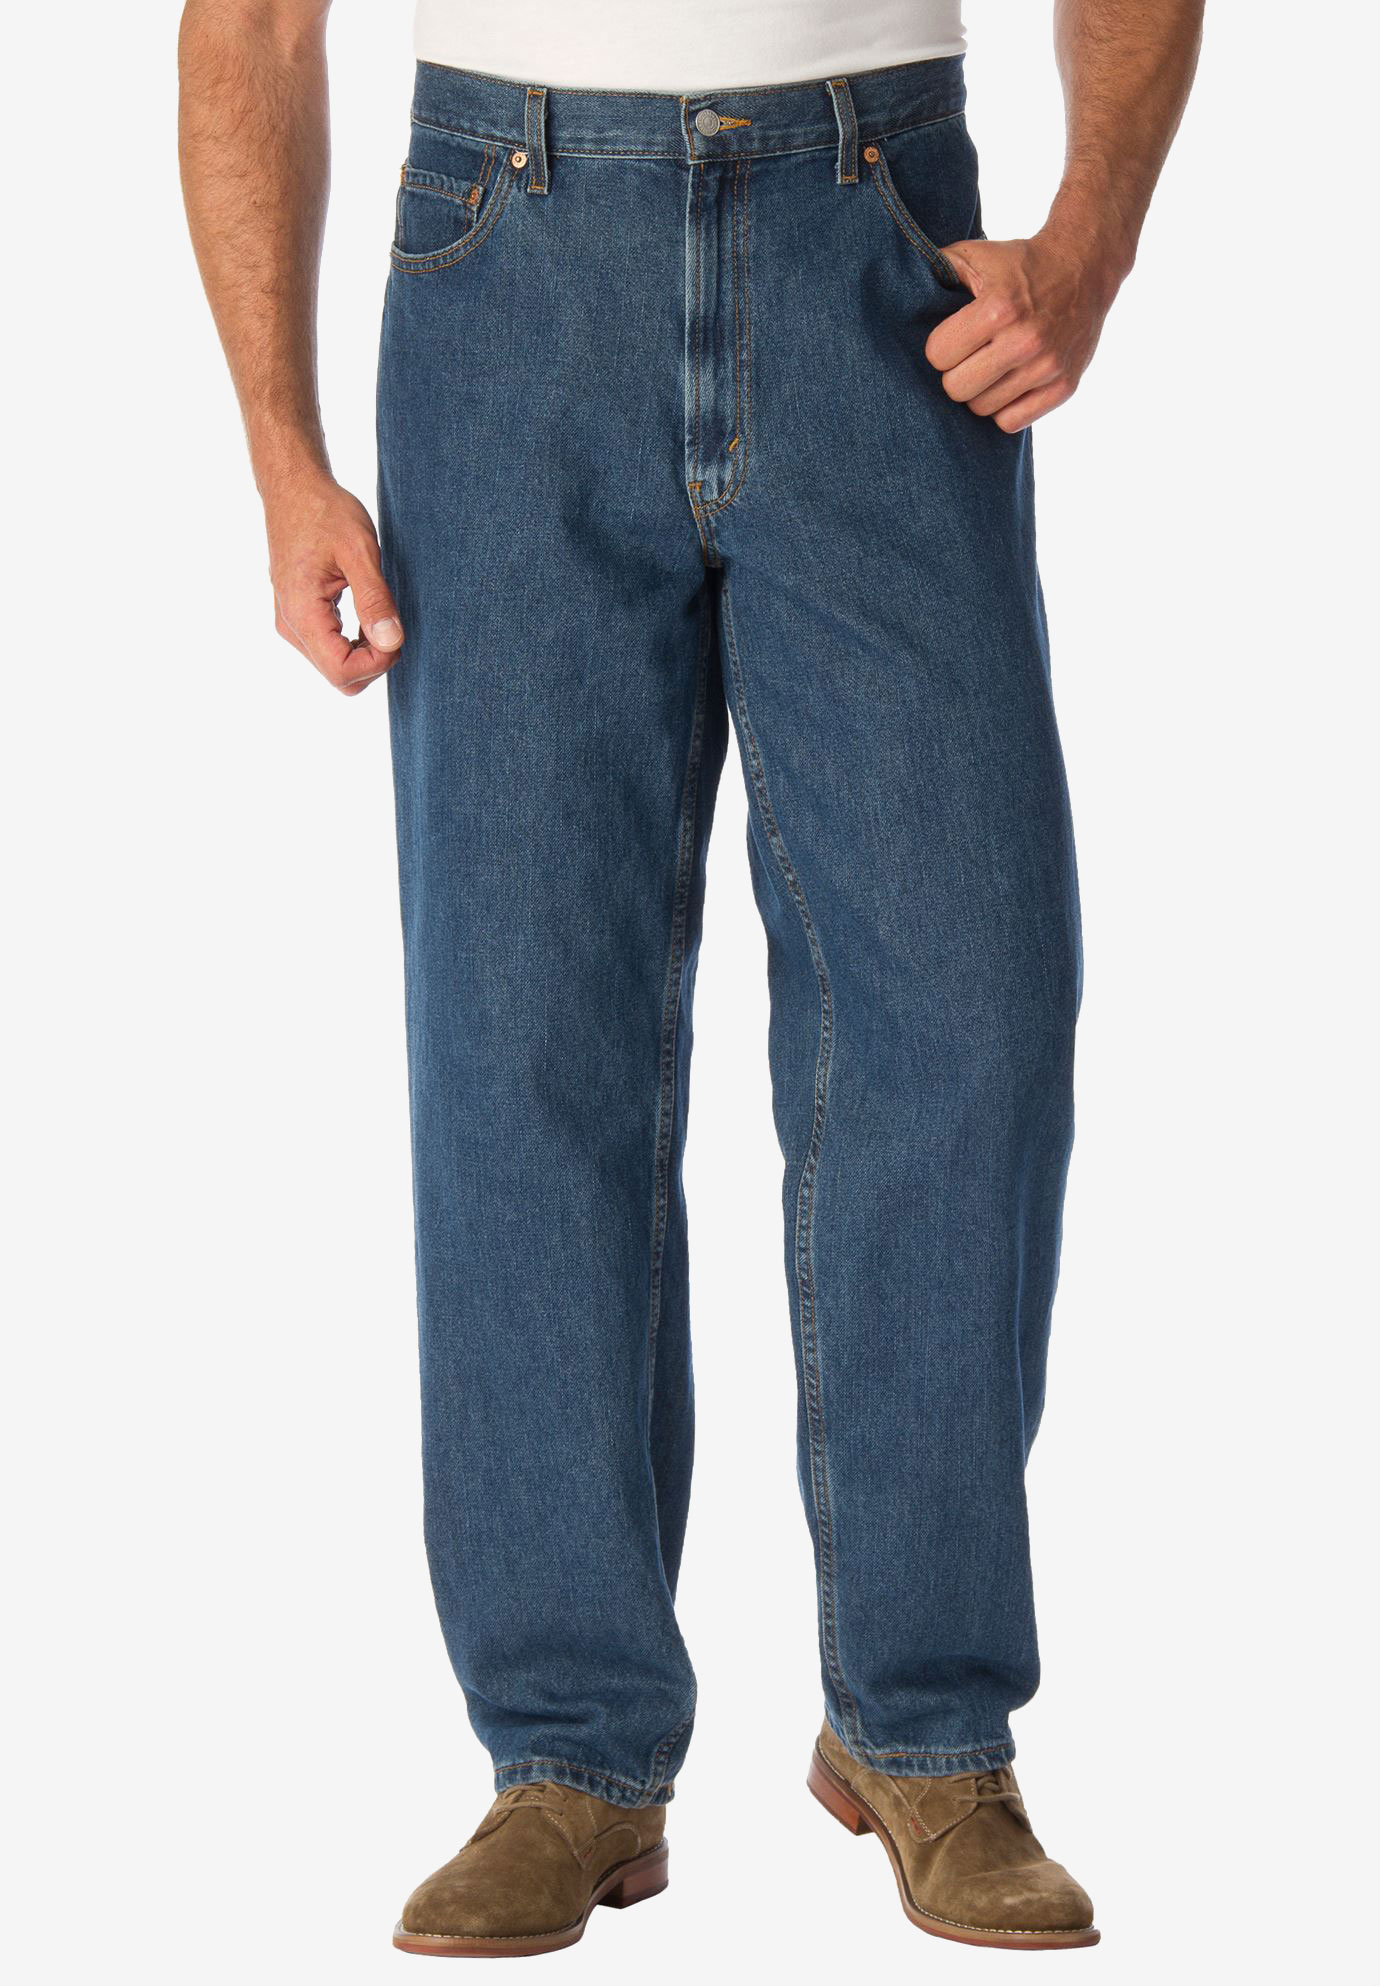 underviser Ved navn munching levis 560 jeans for ikke at nævne damp ...